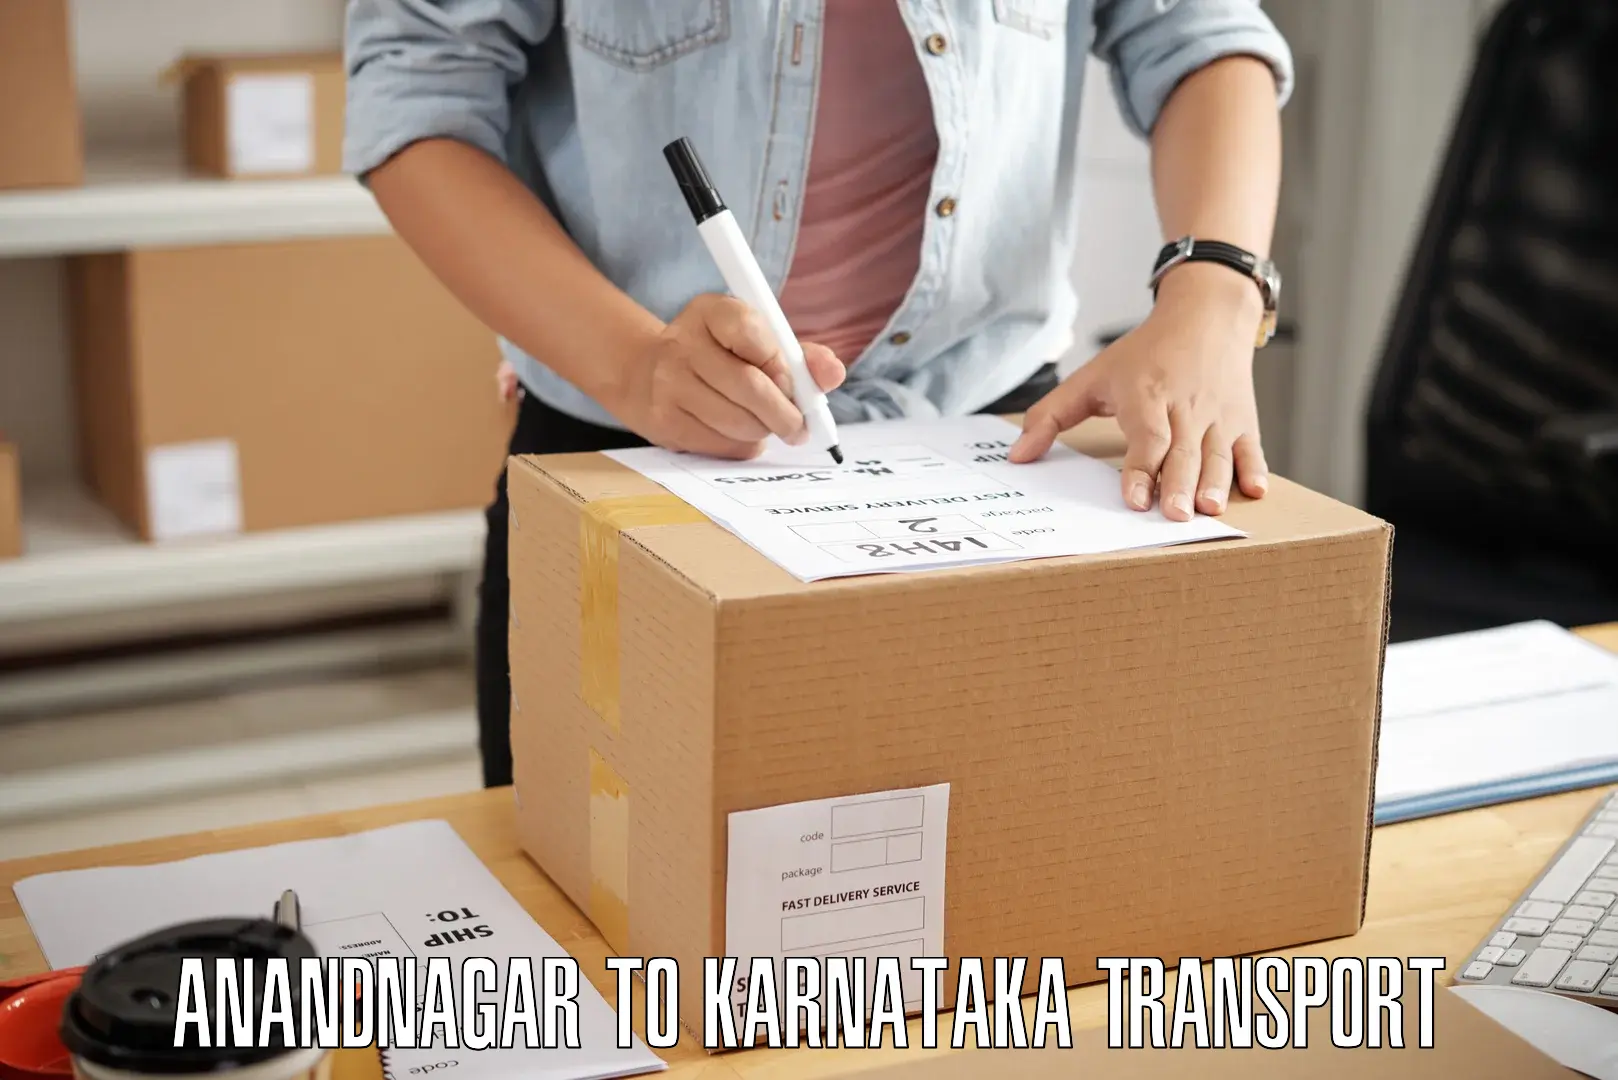 Transport in sharing Anandnagar to Kadur